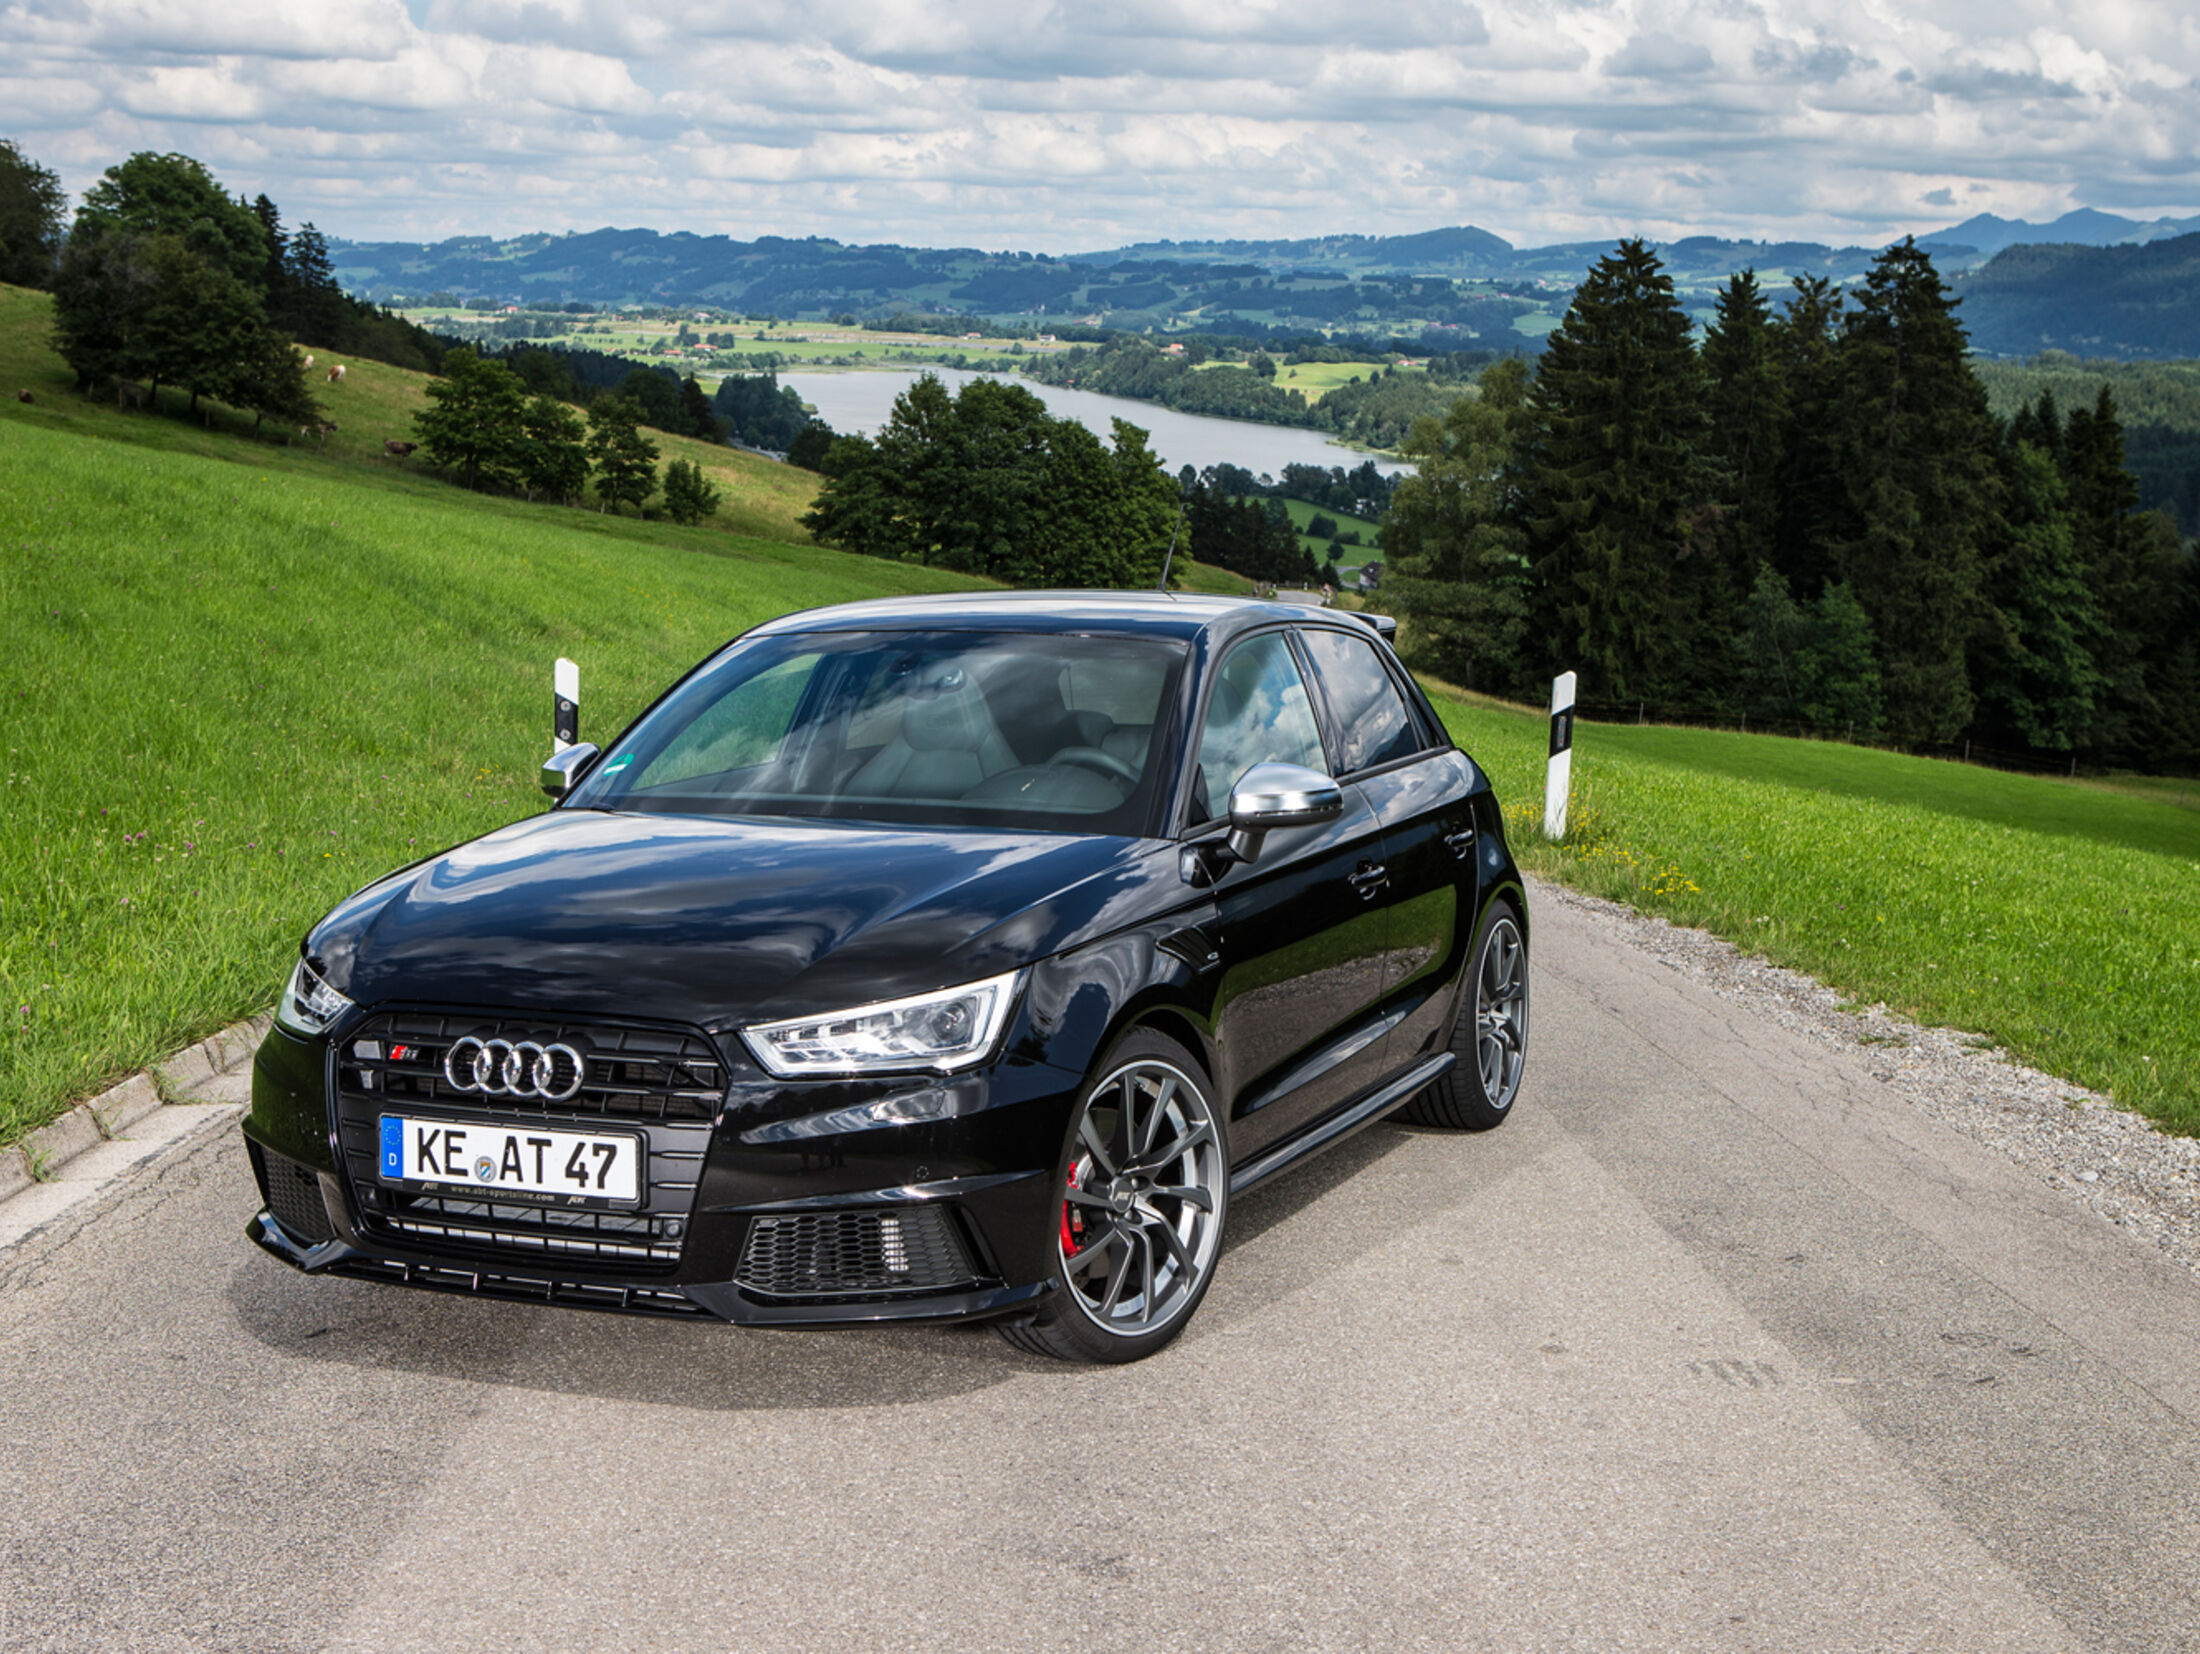 Audi-Tuning: Kraft der 4 Ringe